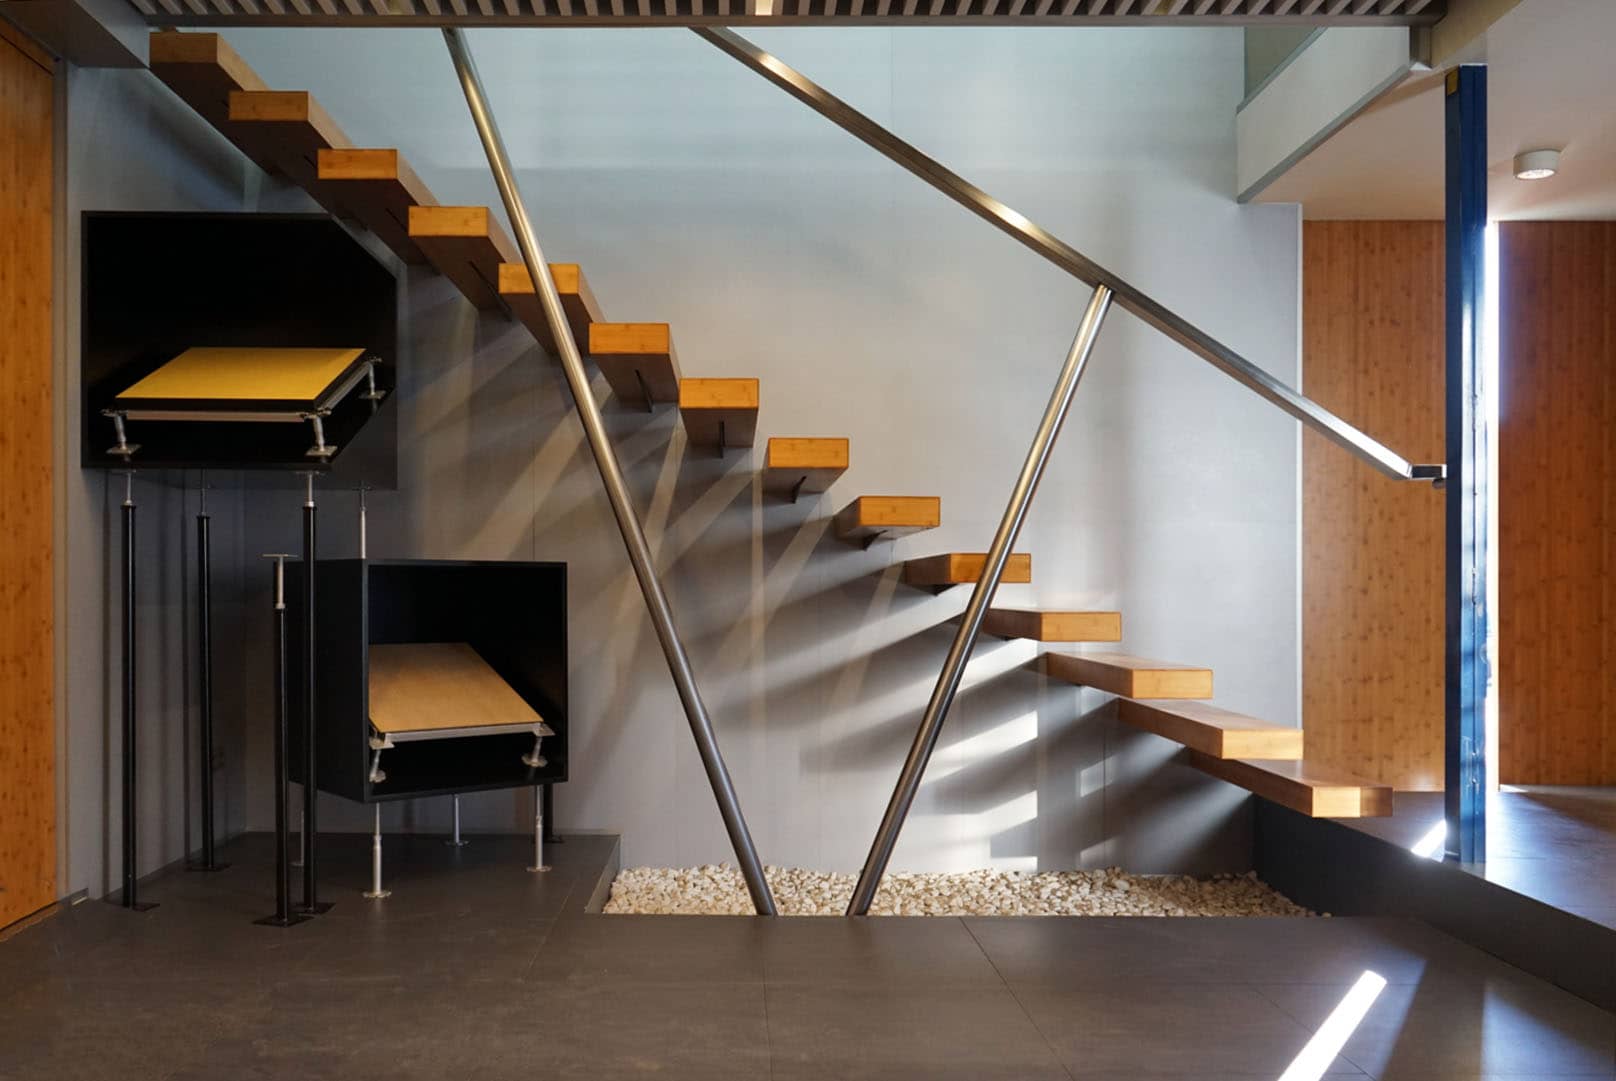 HOME STAIR - Escalera de bambú.  Escaleras de bambú, Estructura